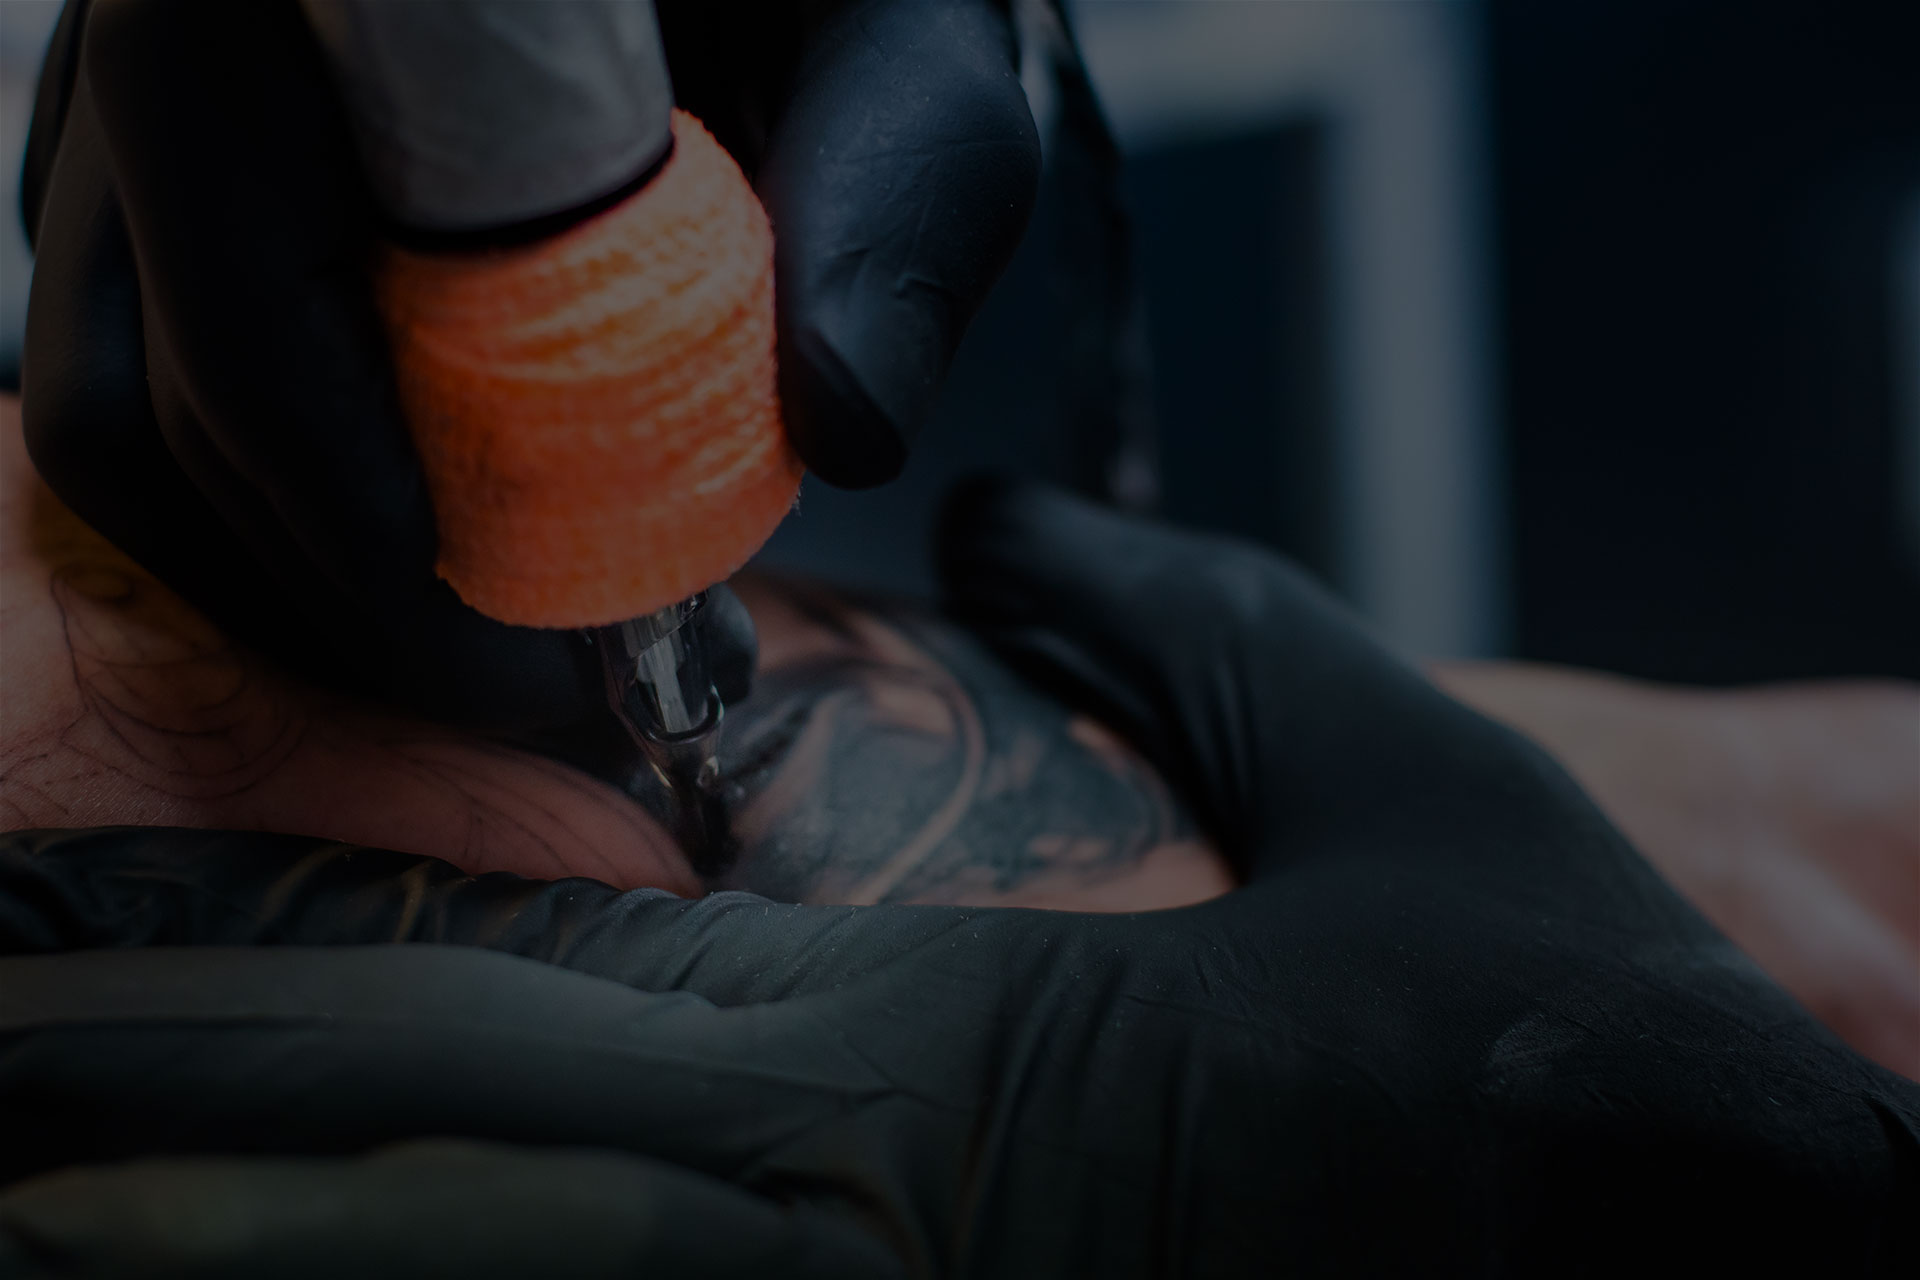 Tatuaggi, Trucco permanente e Piercing a Fiumicino - Wild Ink